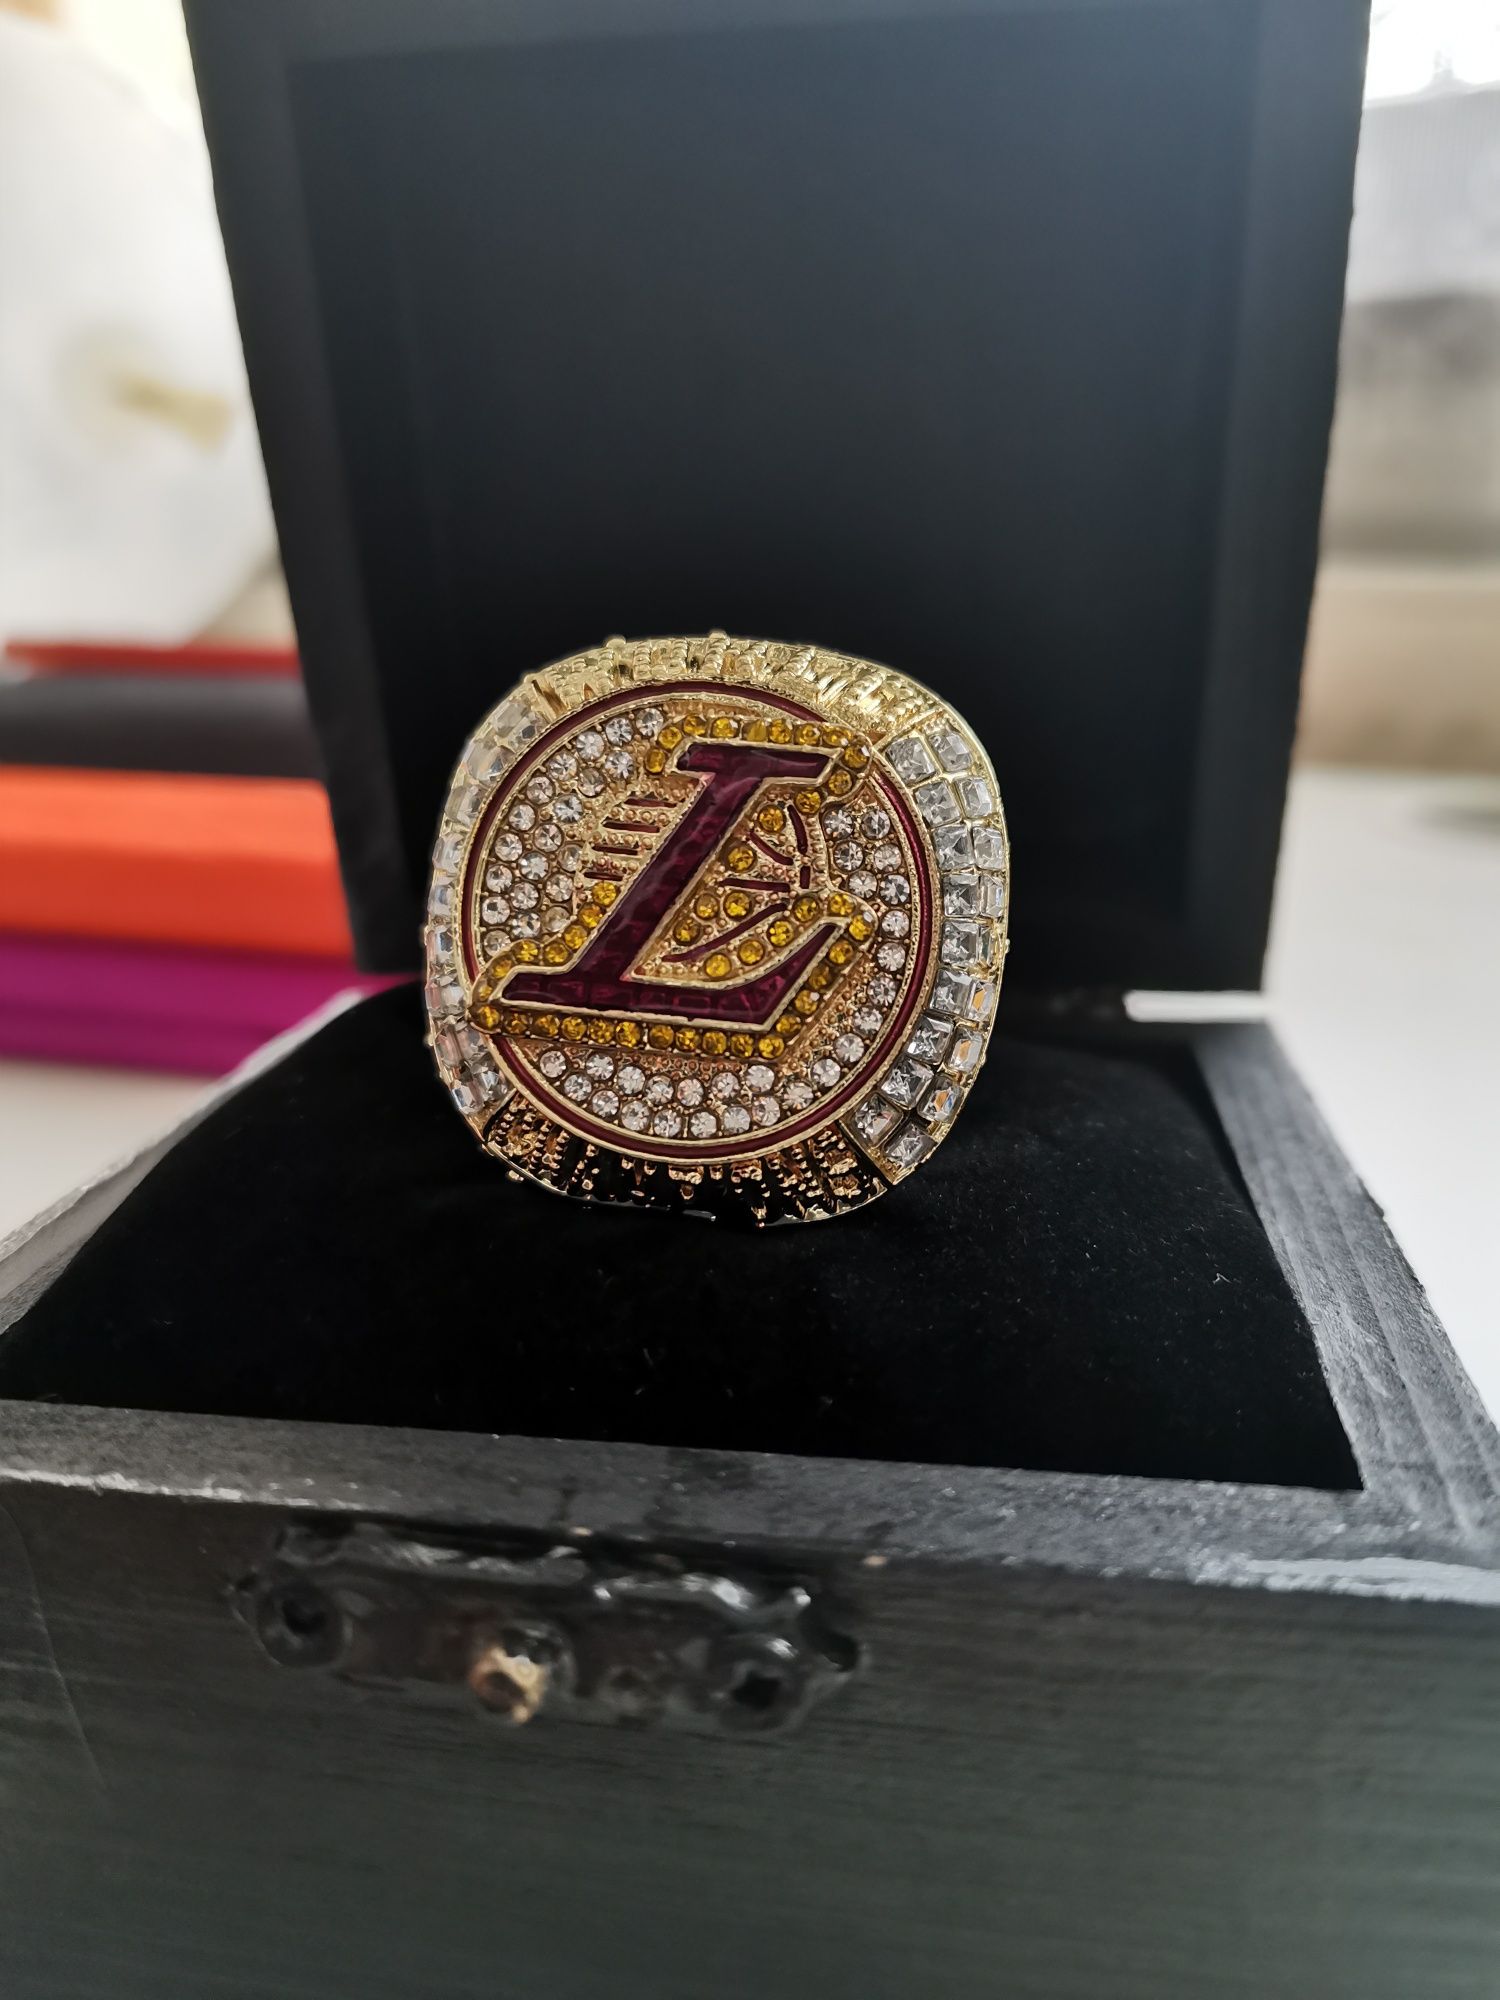 LA Lakers LeBron James championship ring 2020